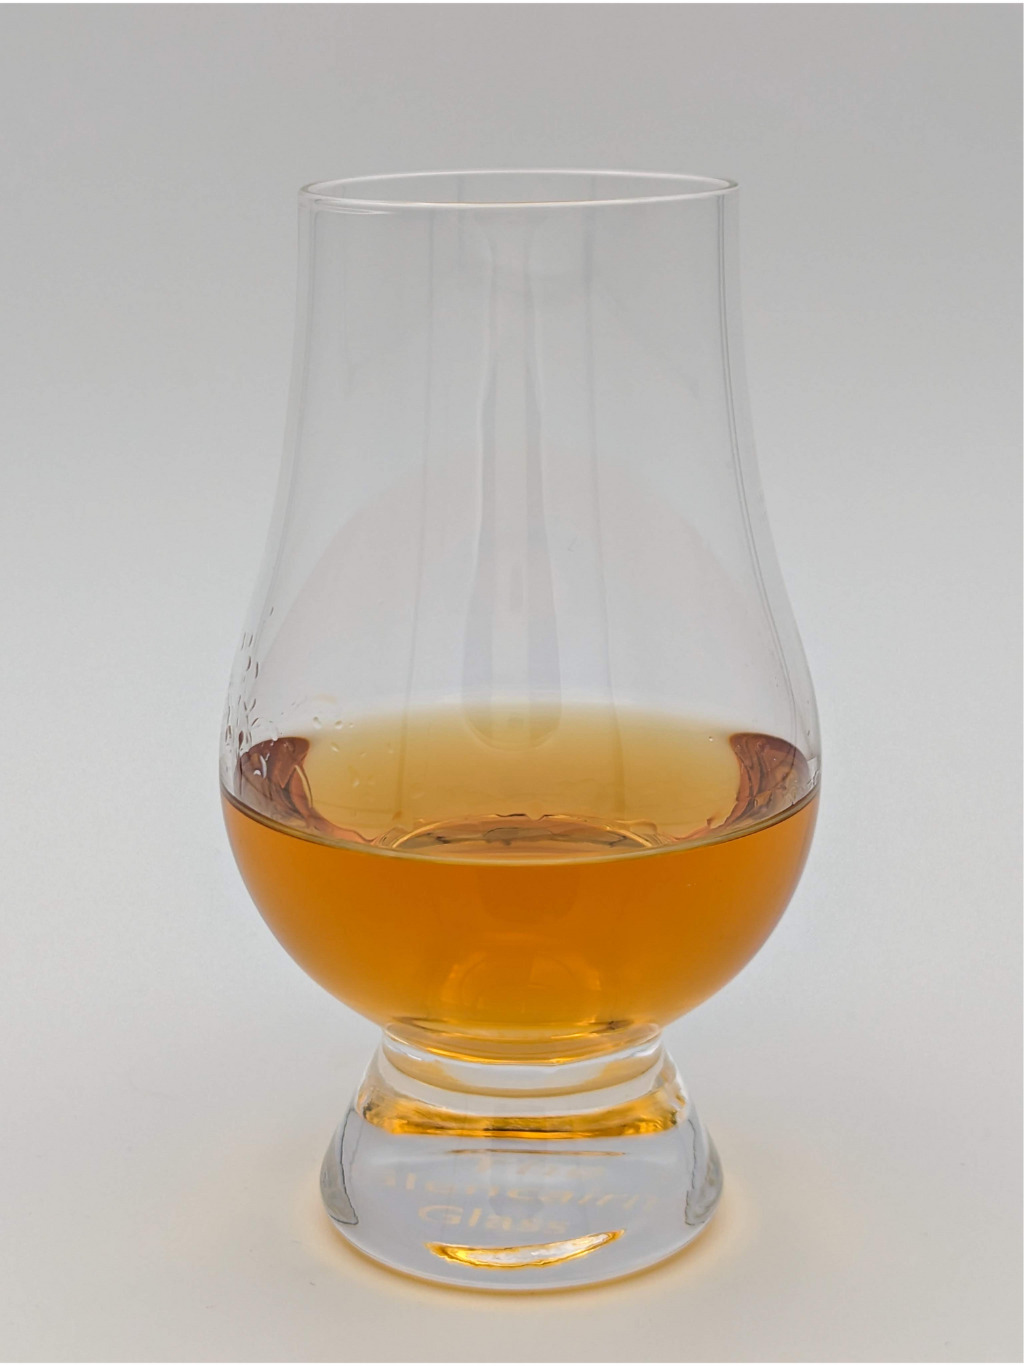 light brown liquid in a glencairn glass